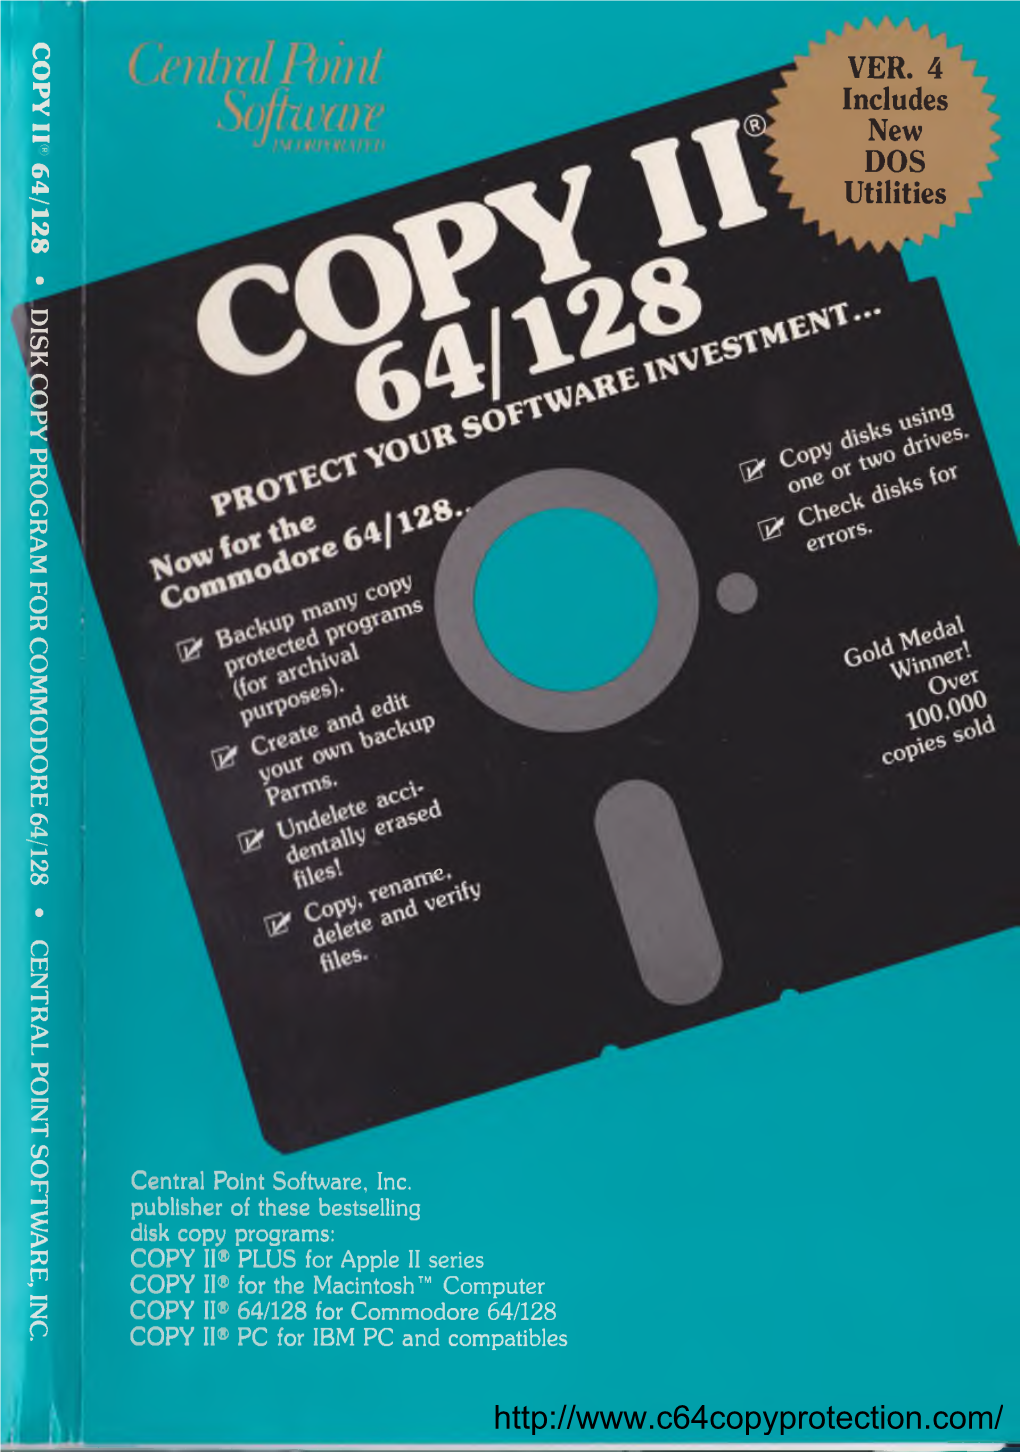 Copy II 64/128, Version 4.0